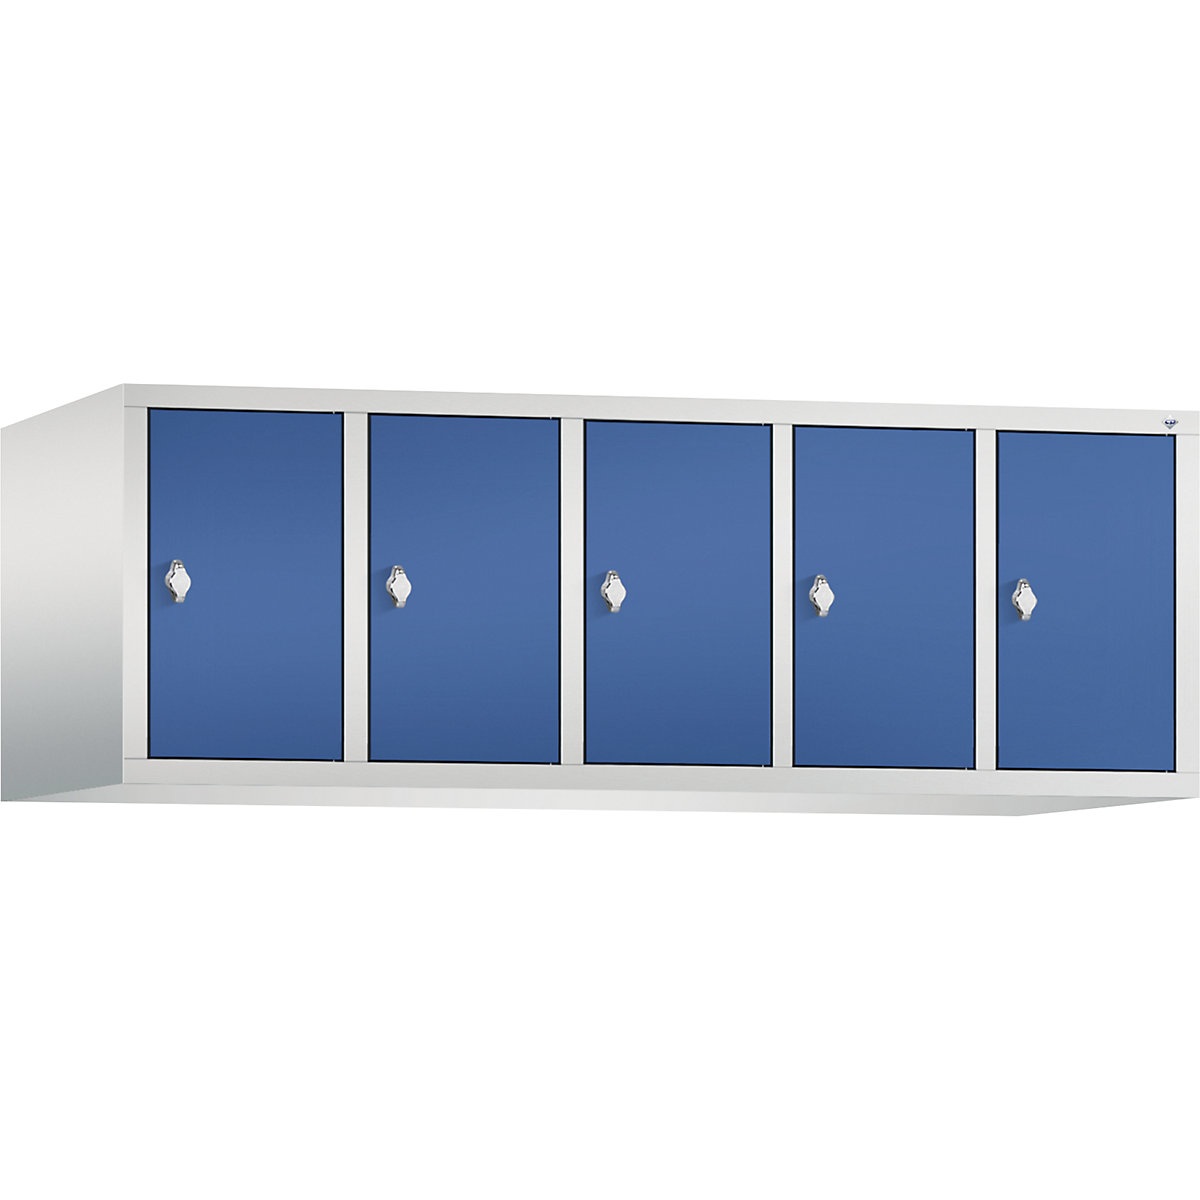 C+P – Altillo CLASSIC, 5 compartimentos, anchura de compartimento 300 mm, gris luminoso / azul genciana